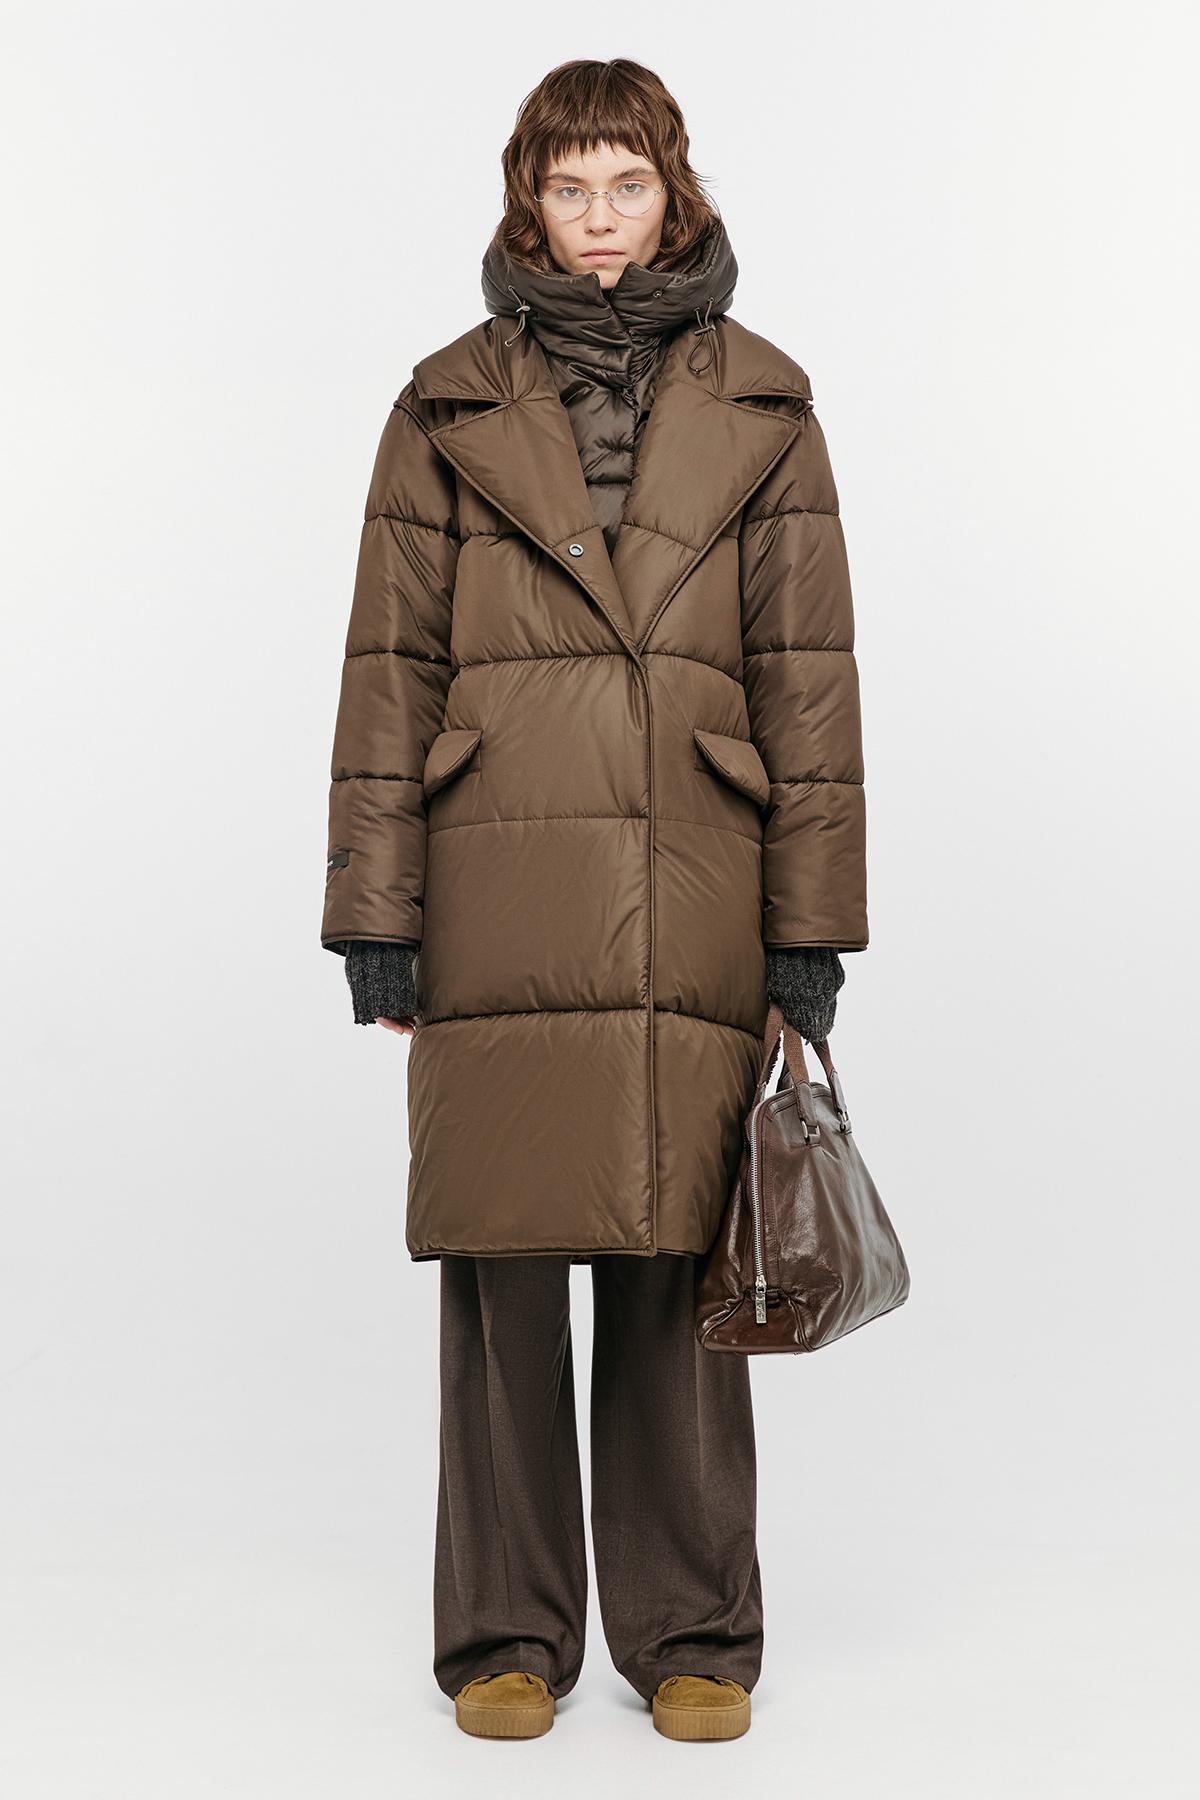 Зимнее пальто Nadya, Novaya, 38 900 руб. (novayawear.com)